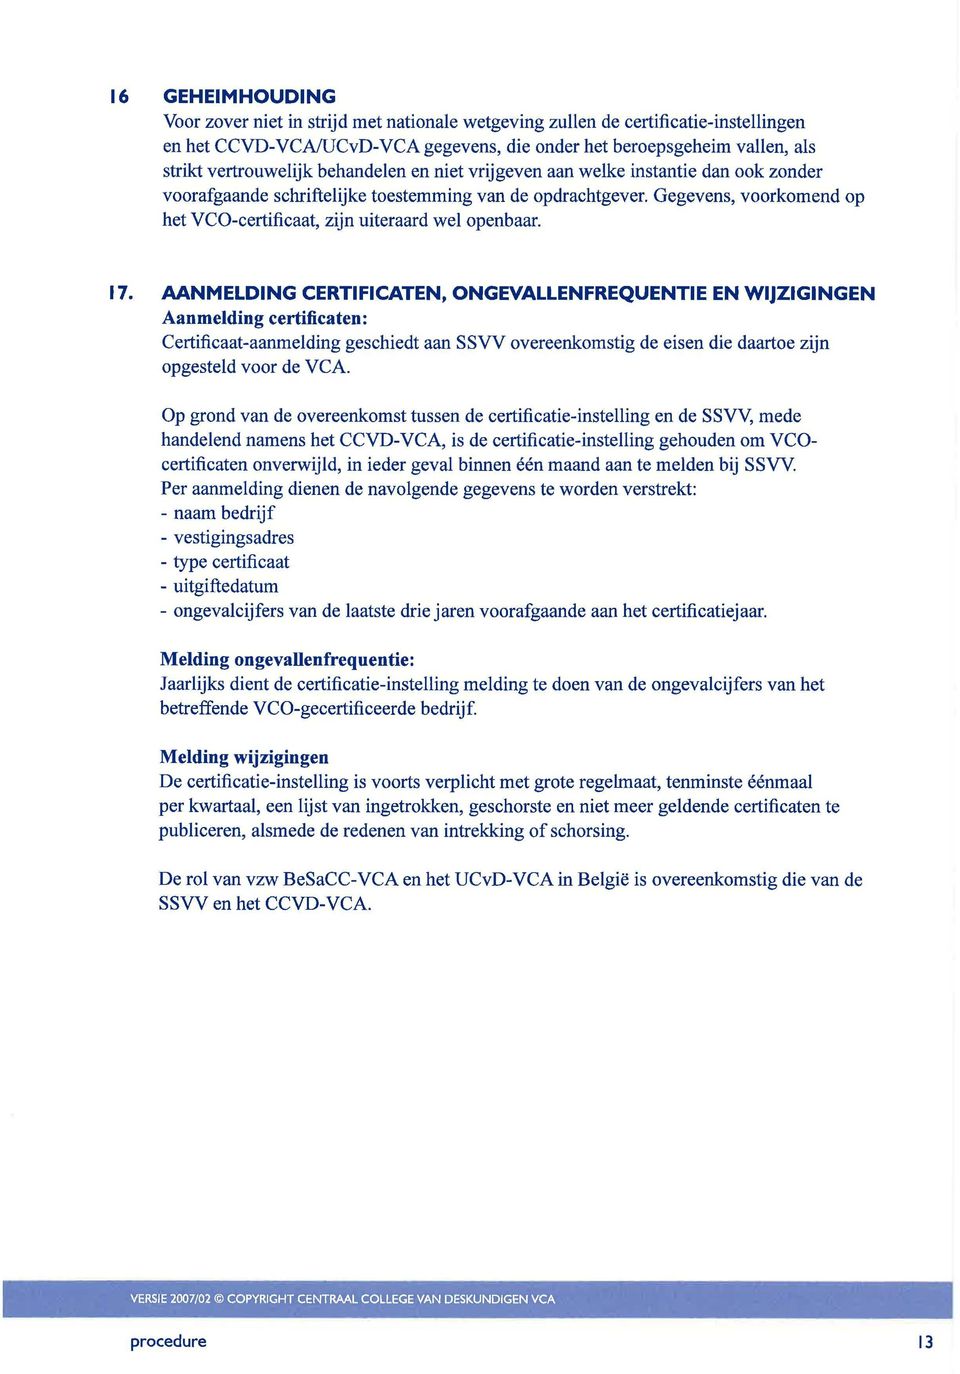 17. AANMELDING CERTIFICATEN, ONGEVALLENFREQUENTIE EN WIJZIGINGEN Aanmelding certificaten: Certificaat-aanmelding geschiedt aan SSVV overeenkomstig de eisen die daartoe zijn opgesteld voor de VCA.